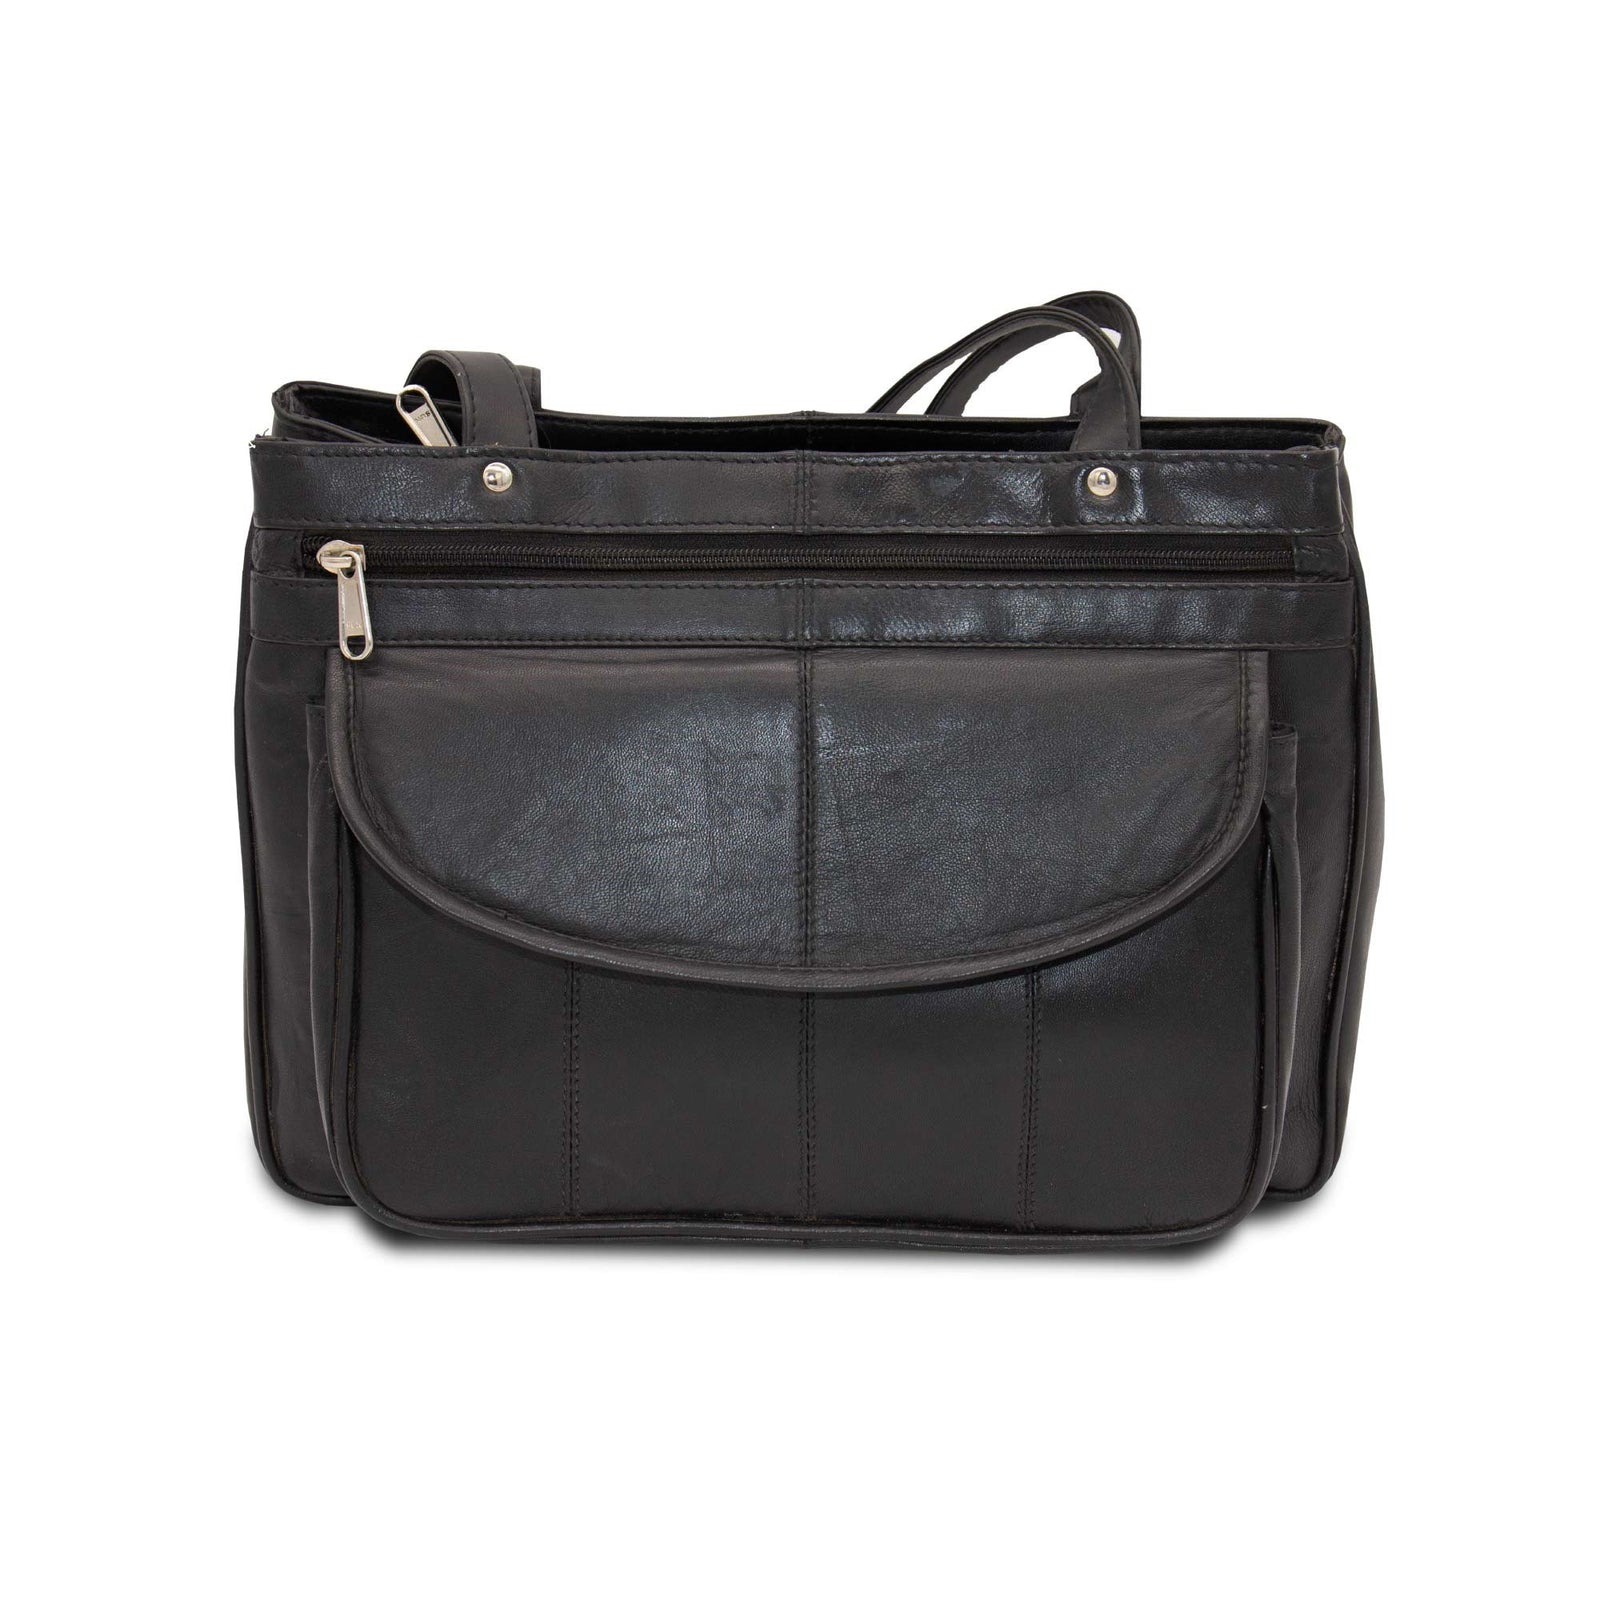 Diva Creations Leather Shoulder Bag Organiser - Black